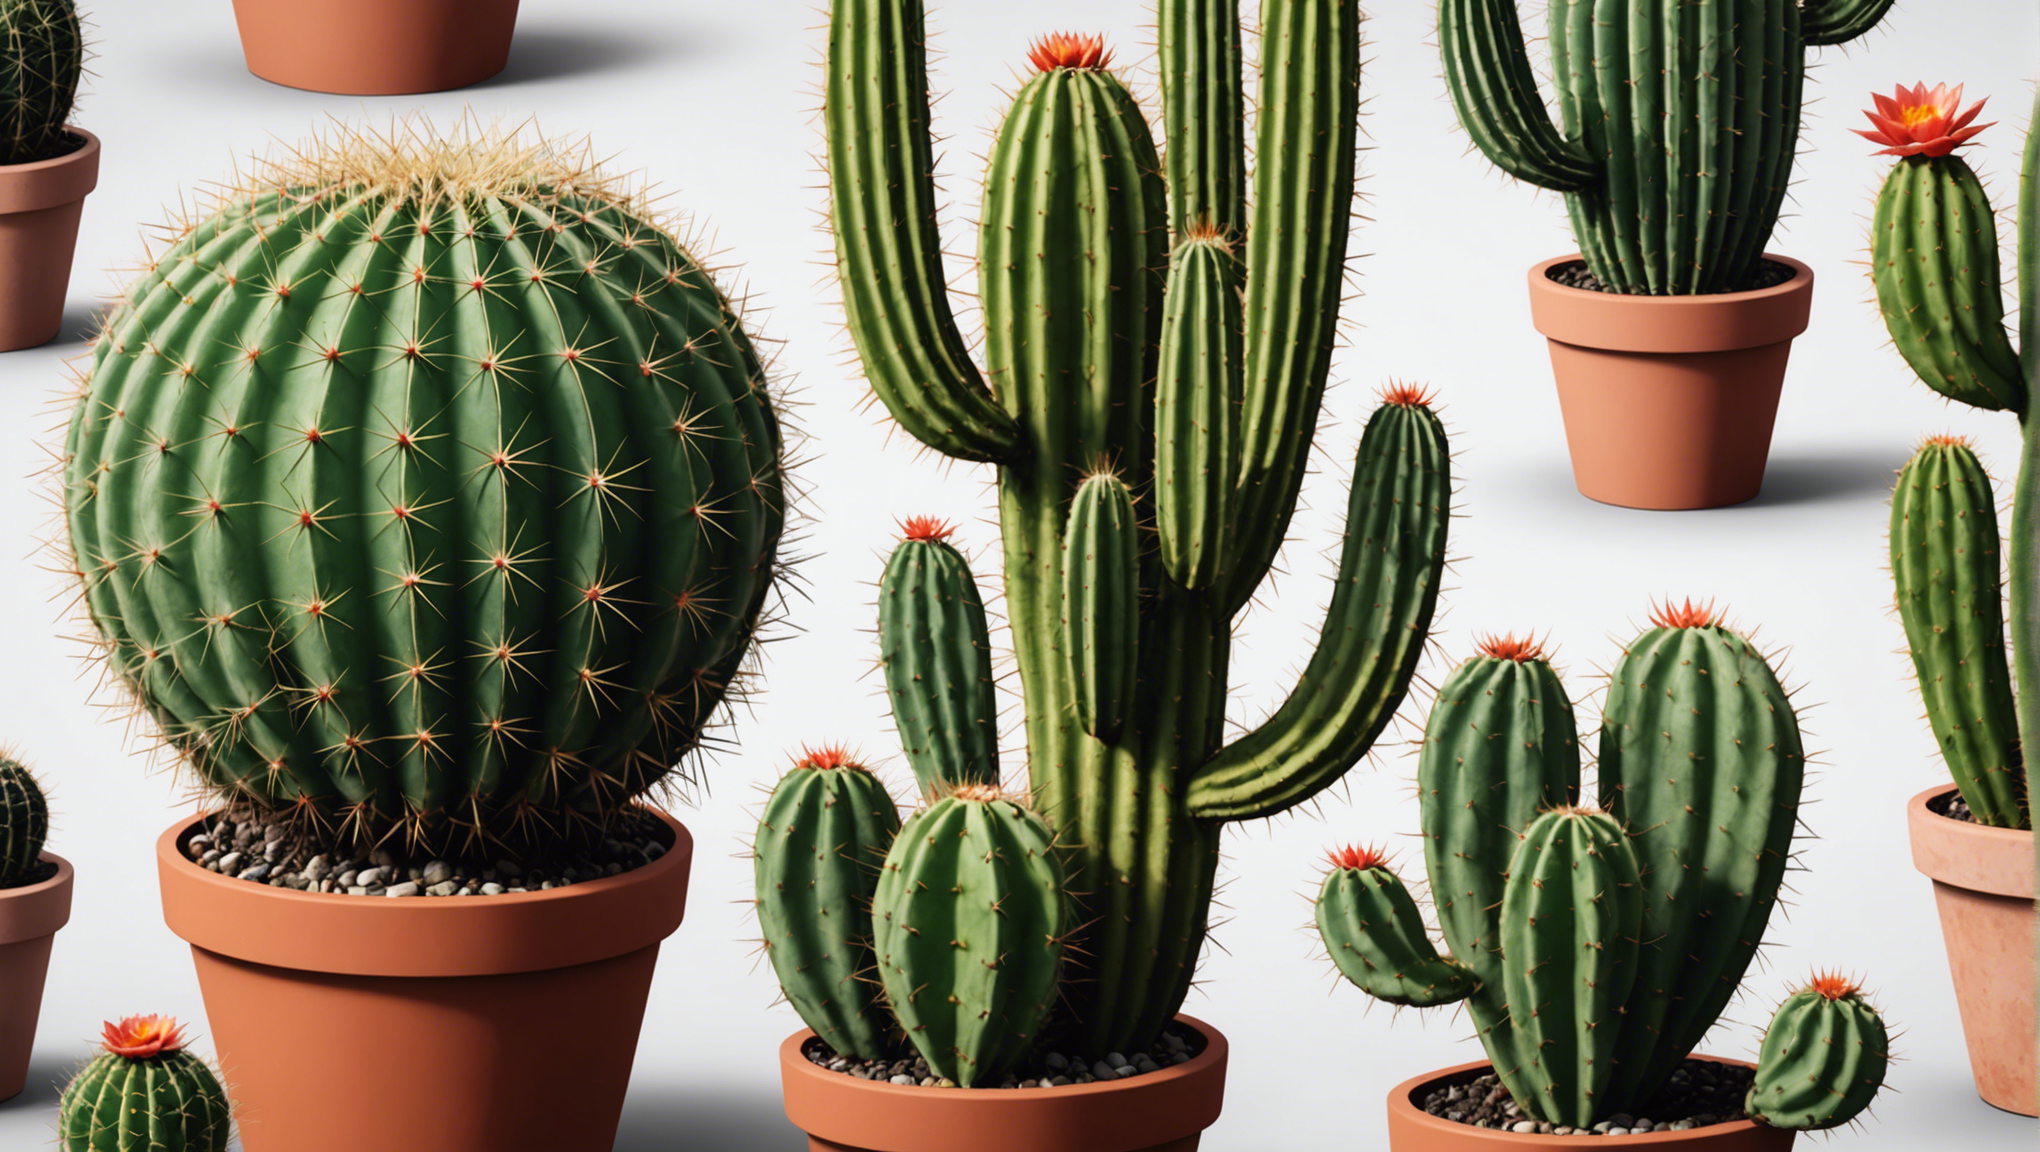 découvrez  comment entretenir facilement les cactus et profiter de leur beauté avec nos conseils pratiques.